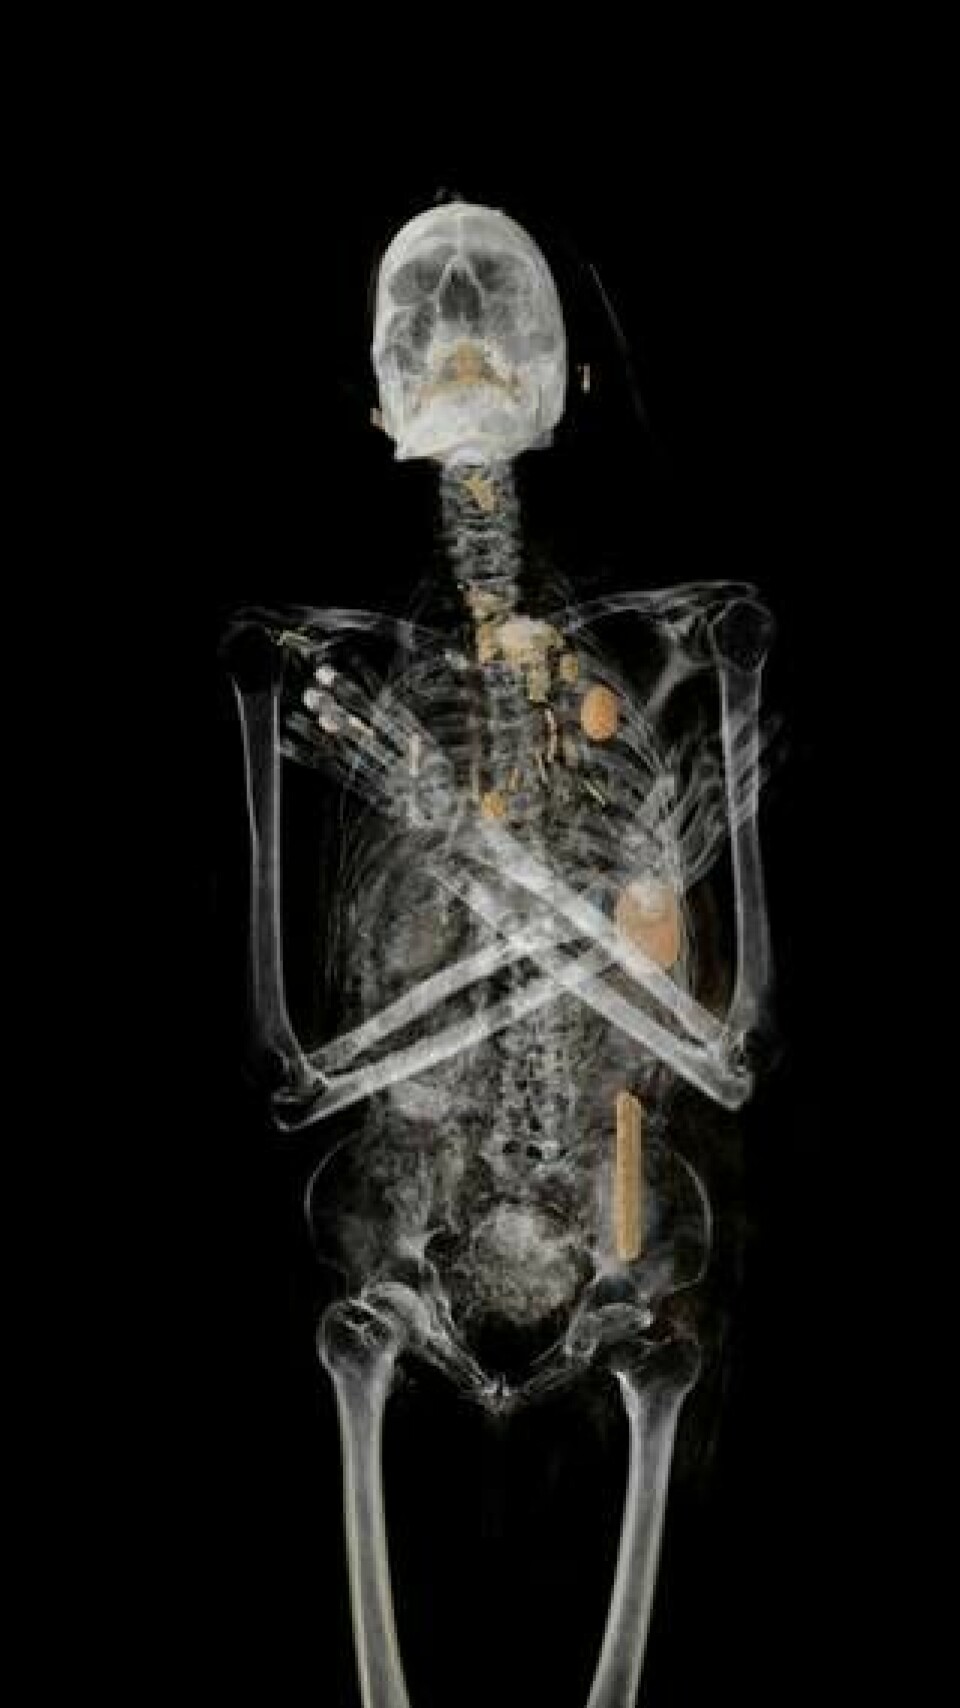 Sammansatta datortomografibilder avslöjar mängder av amuletter på mumiens bröstkorg. En av dem är den nu återskapade falken. Foto: Världskulturmuseerna/Interactive Institute Swedish ICT